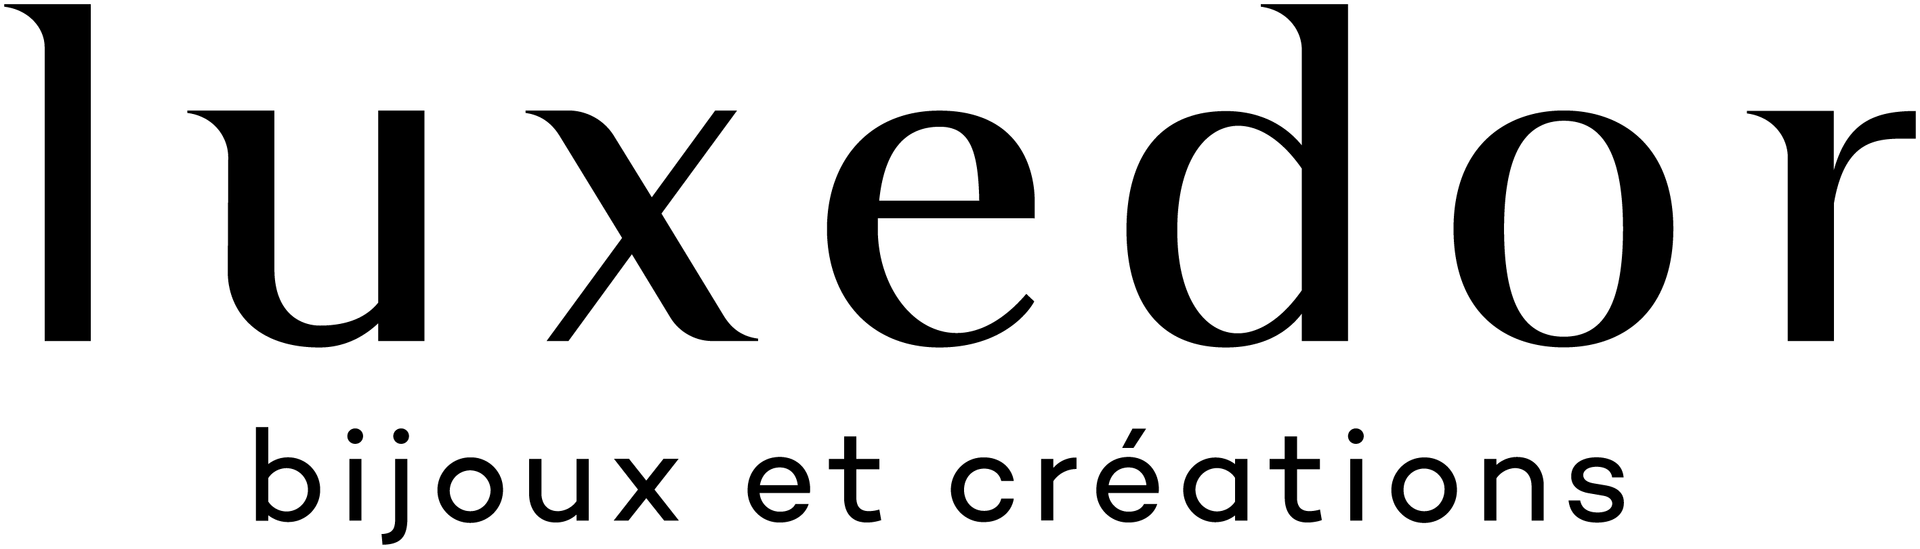 LUXEDOR logo de circulaires